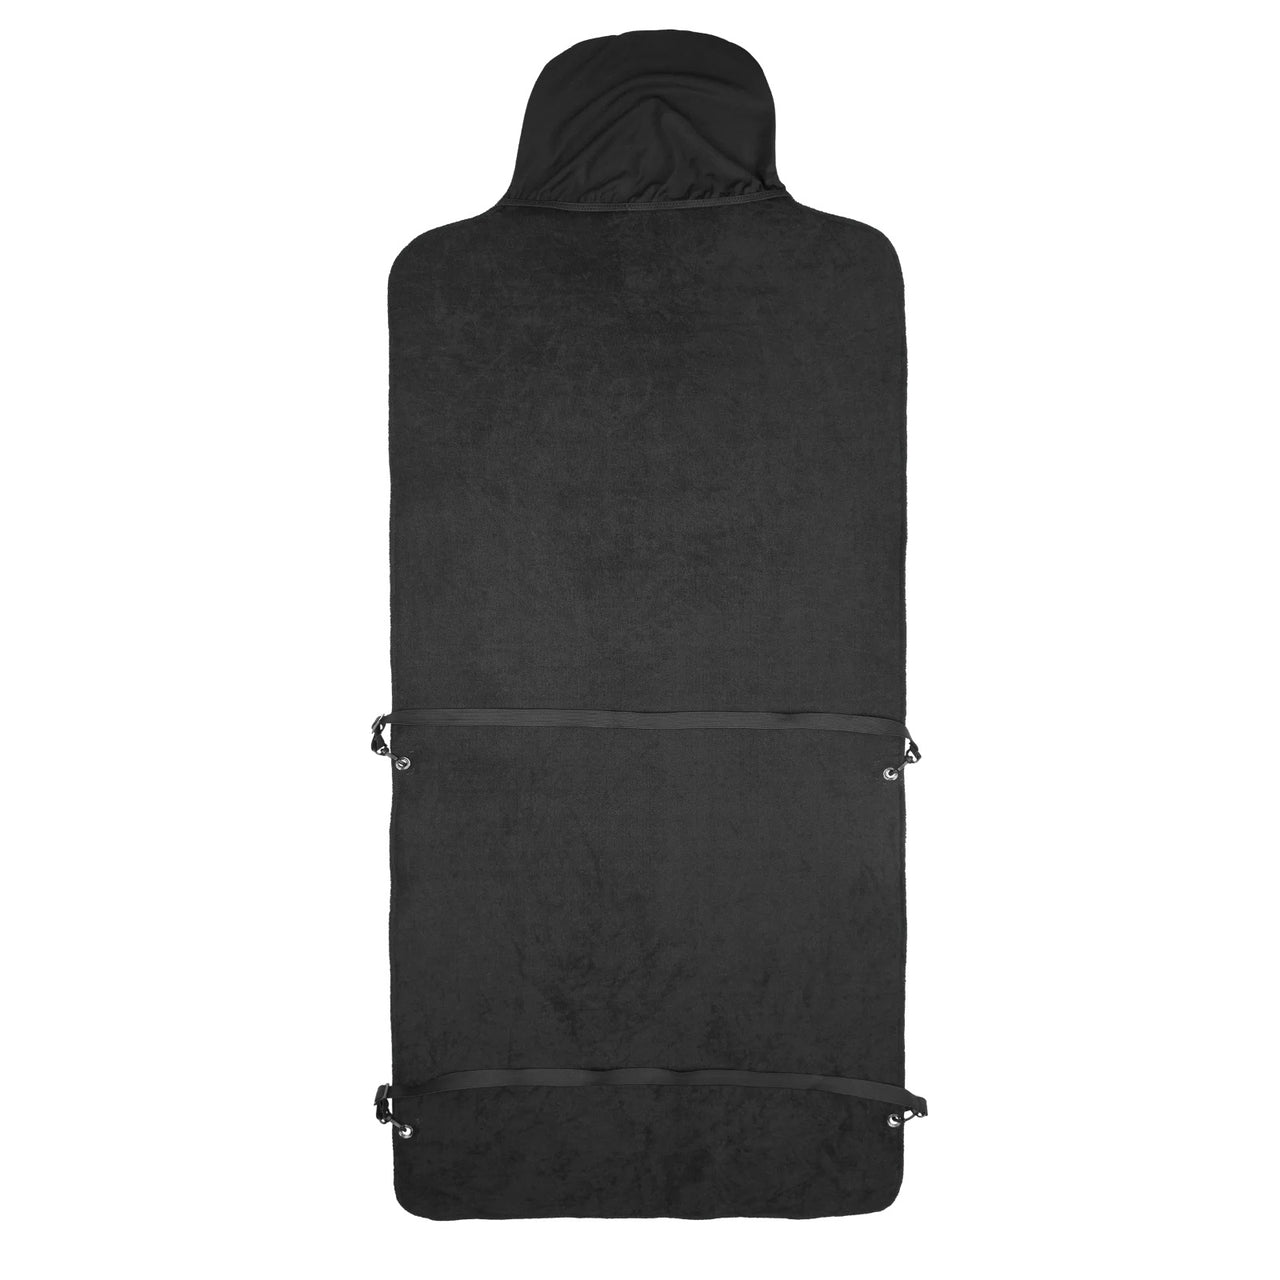 ION Seat Asciugamano impermeabilizzato – Accessorio